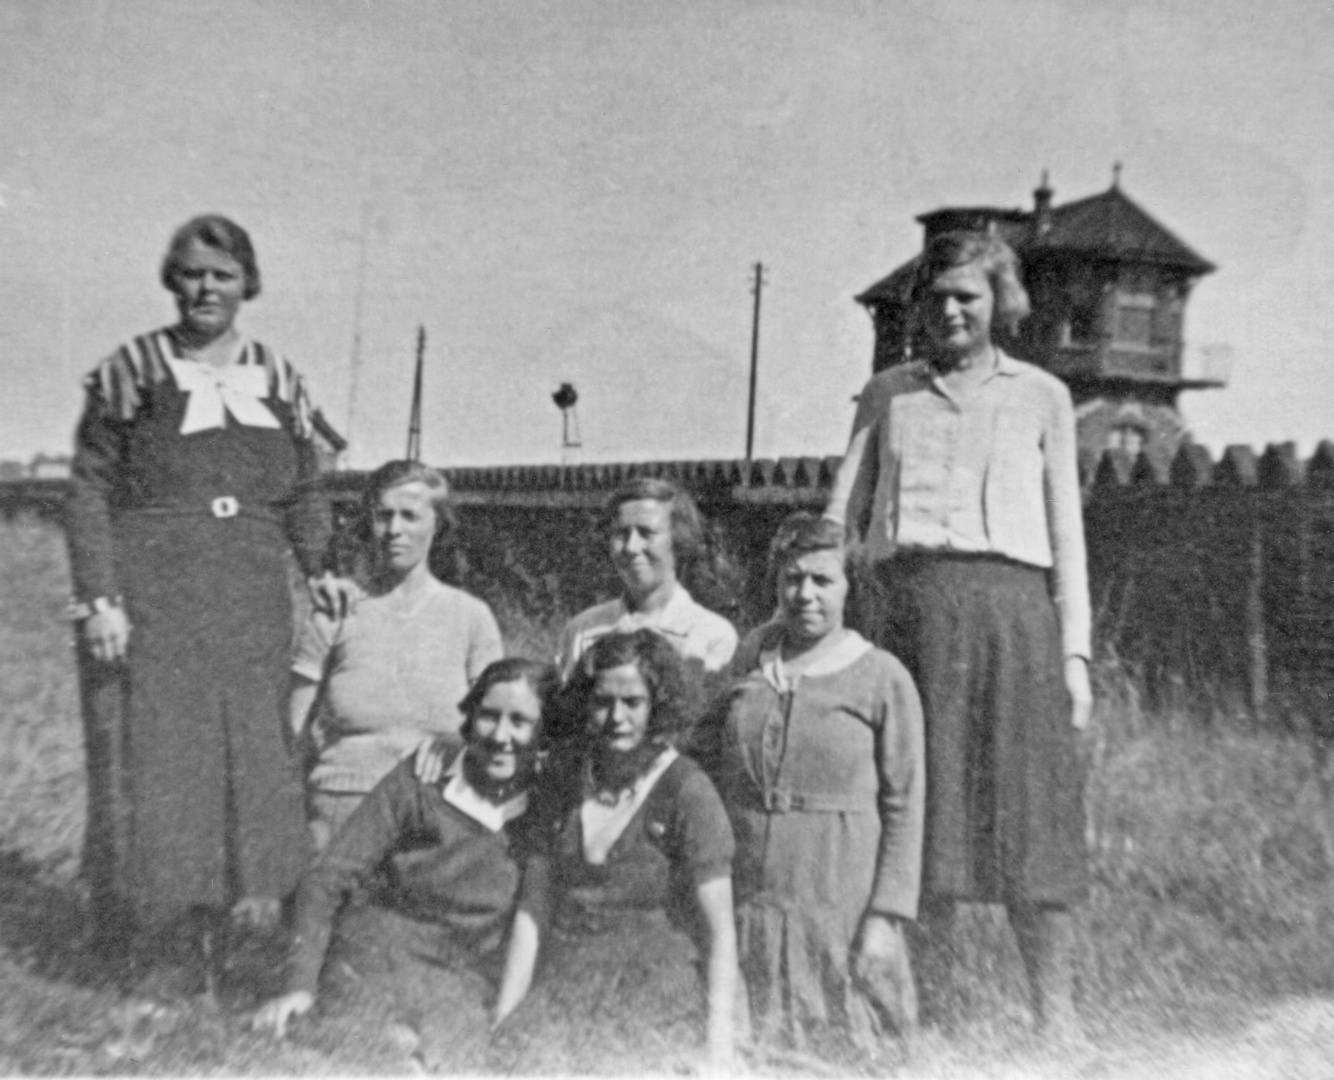 Wie dazumal - Meine Schwiegermutter (links) mit Arbeitskolleginen um 1925 